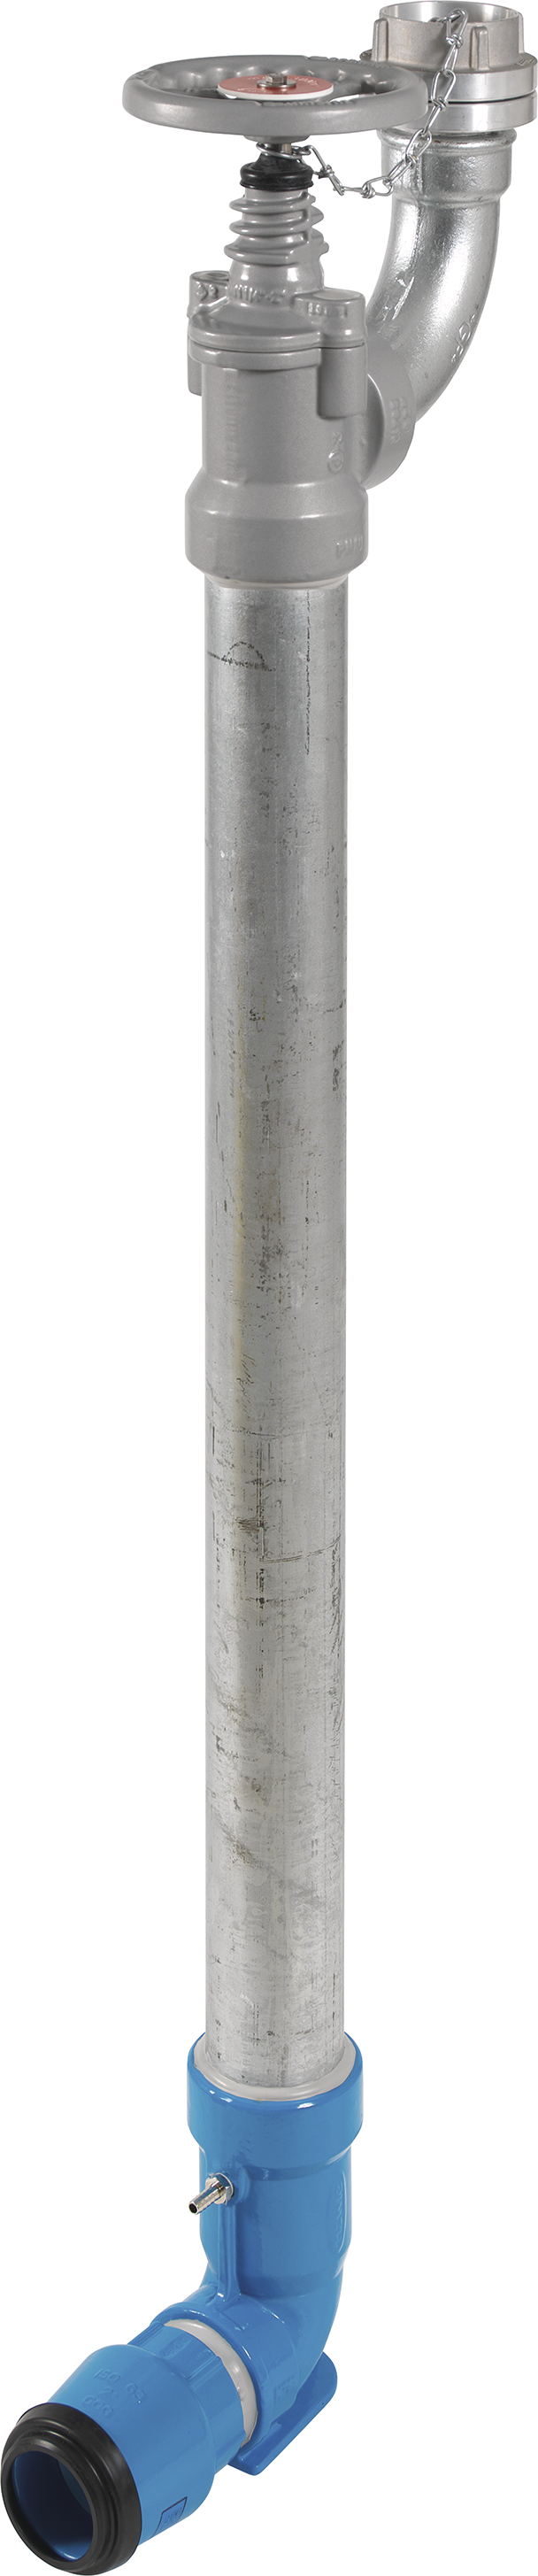 Bewässerungshydrant Unterflur N767 d 63mm, L = 800mm - Hawle Hydranten